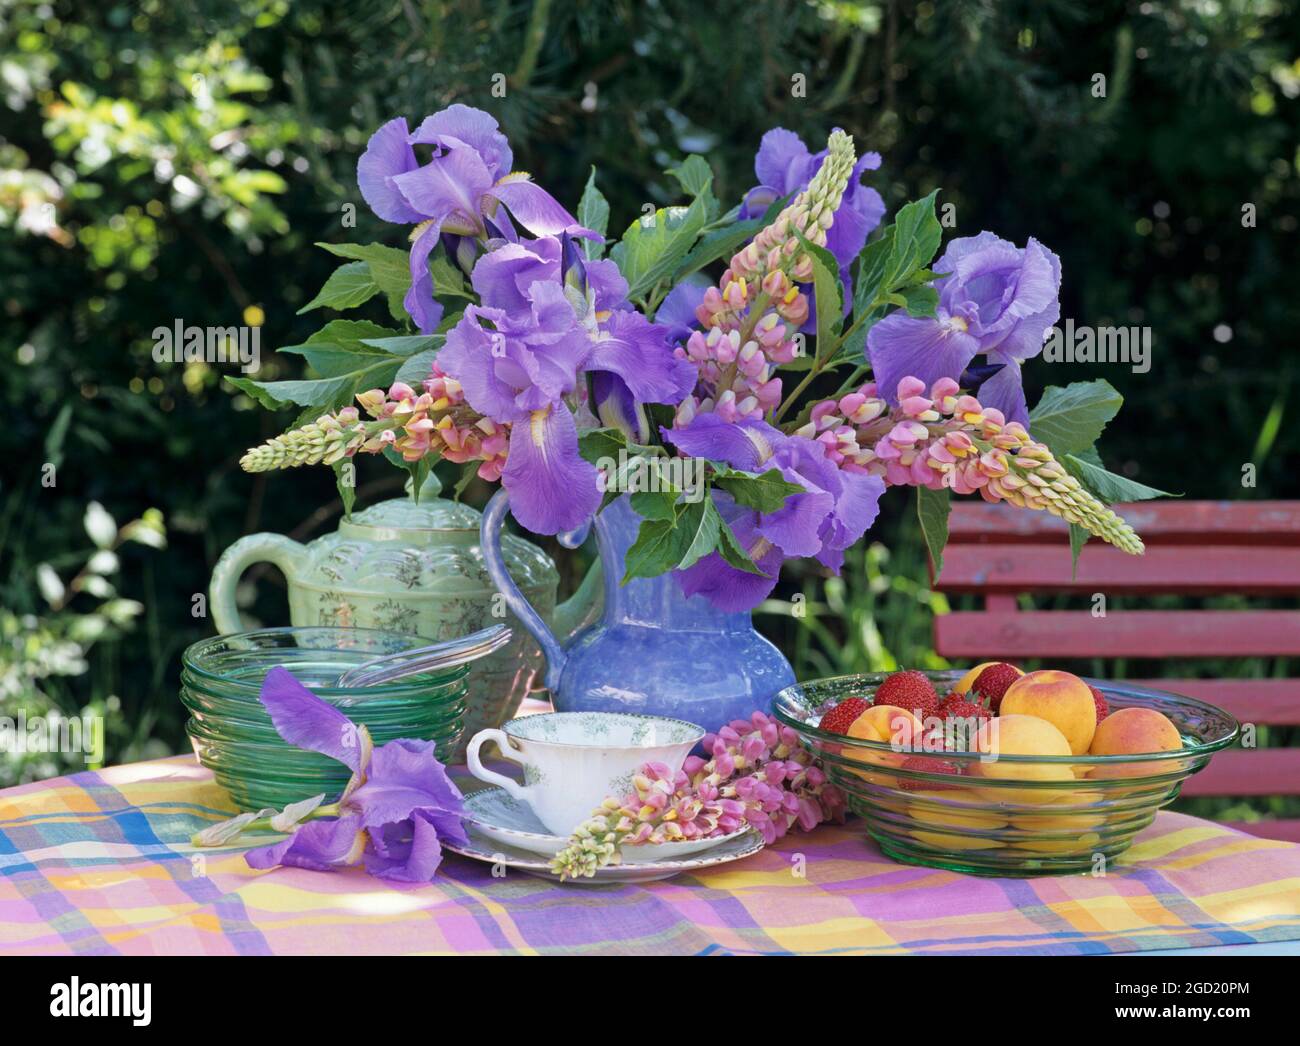 Botanica, lupin e iris in una caraffa su un tavolo in giardino, ACCESSIONAL-RIGHTS-CLEARANCE-INFO-NOT-AVAILABLE Foto Stock